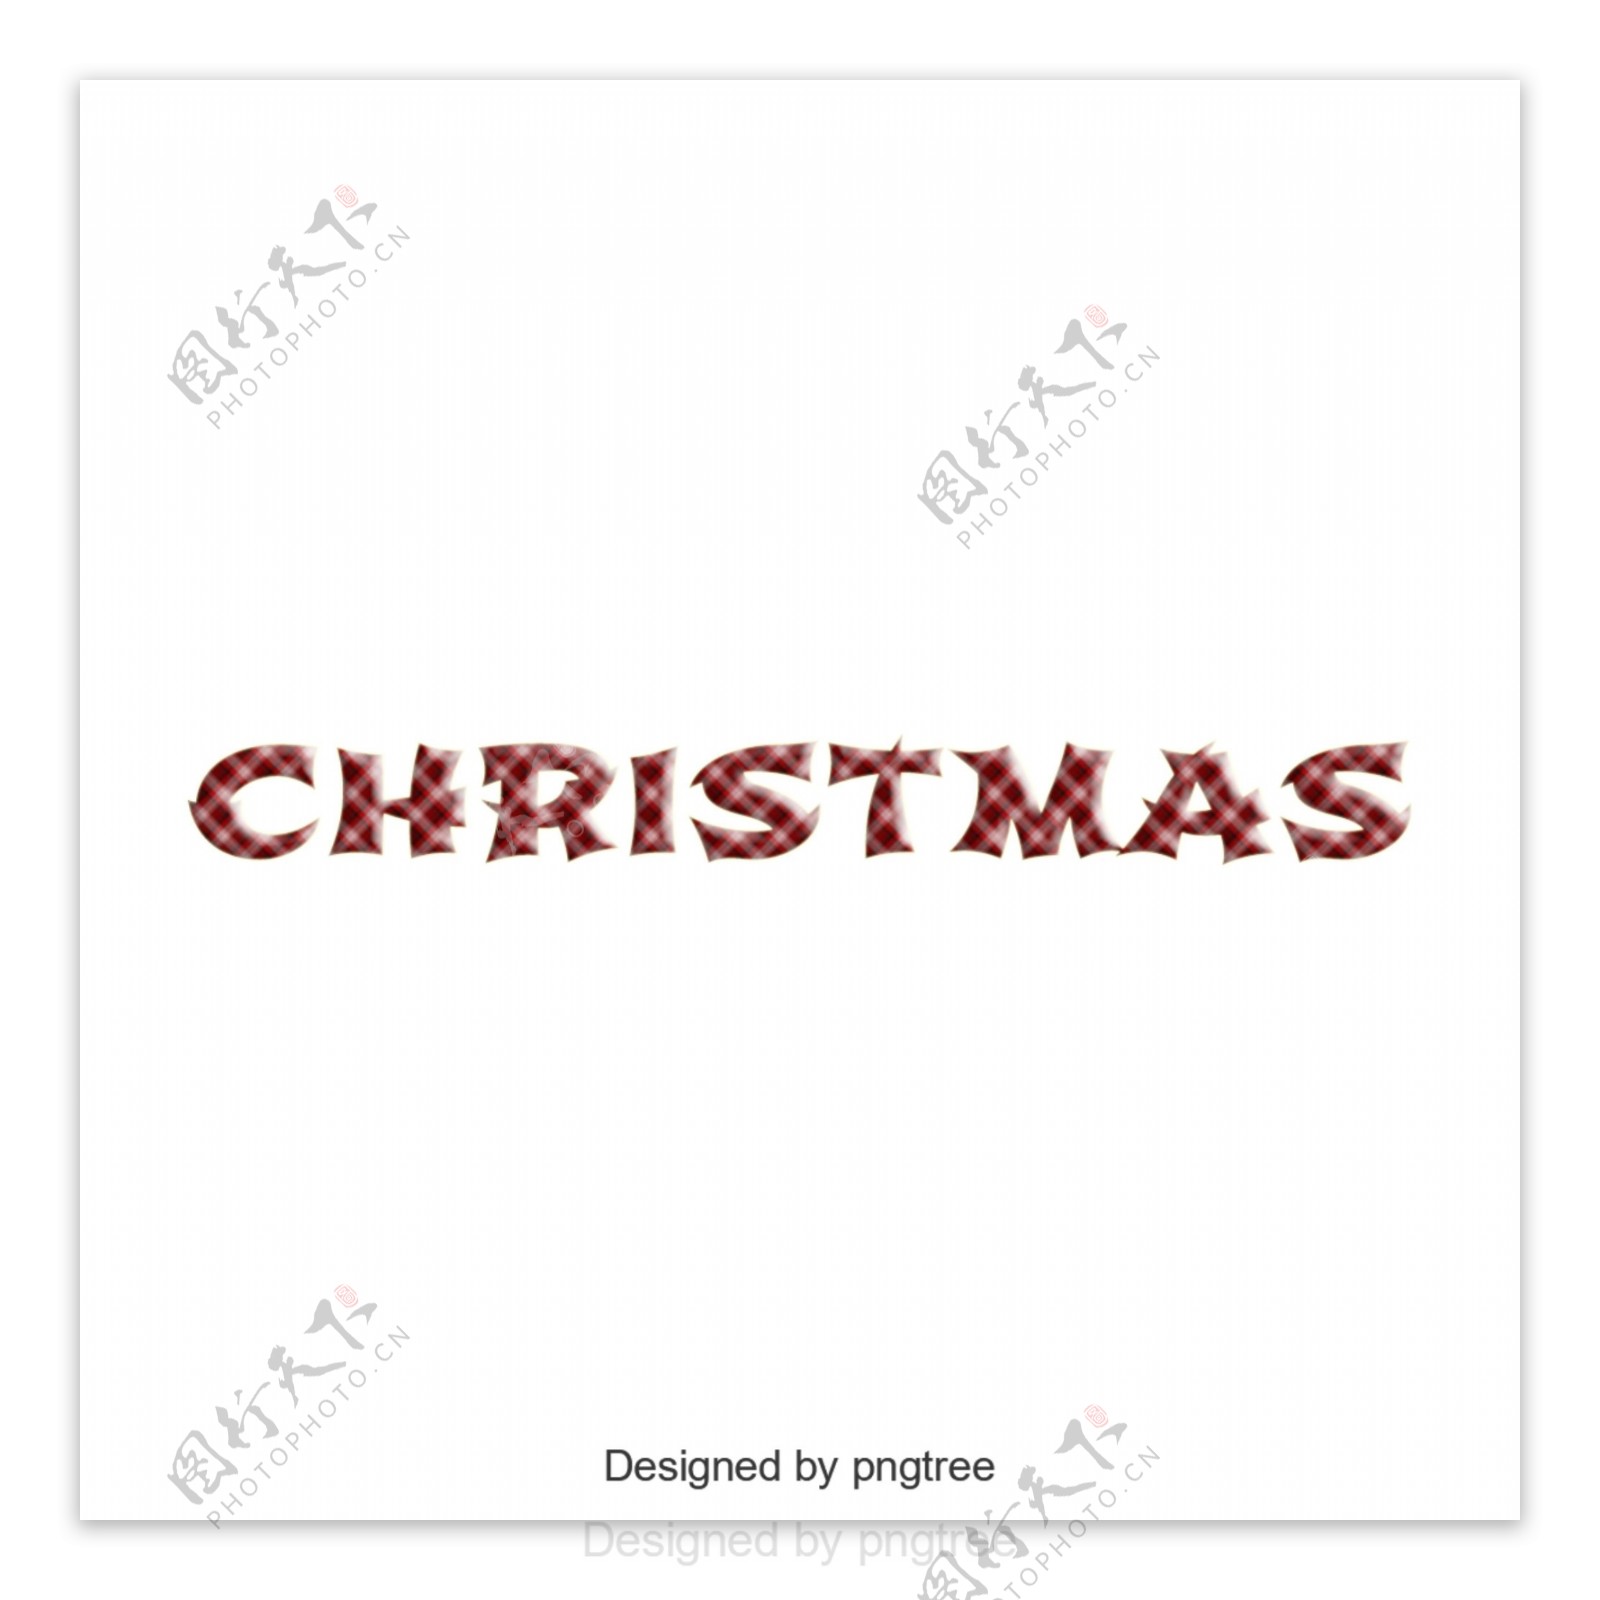 英语字母表的渐变圣诞设计的艺术特征